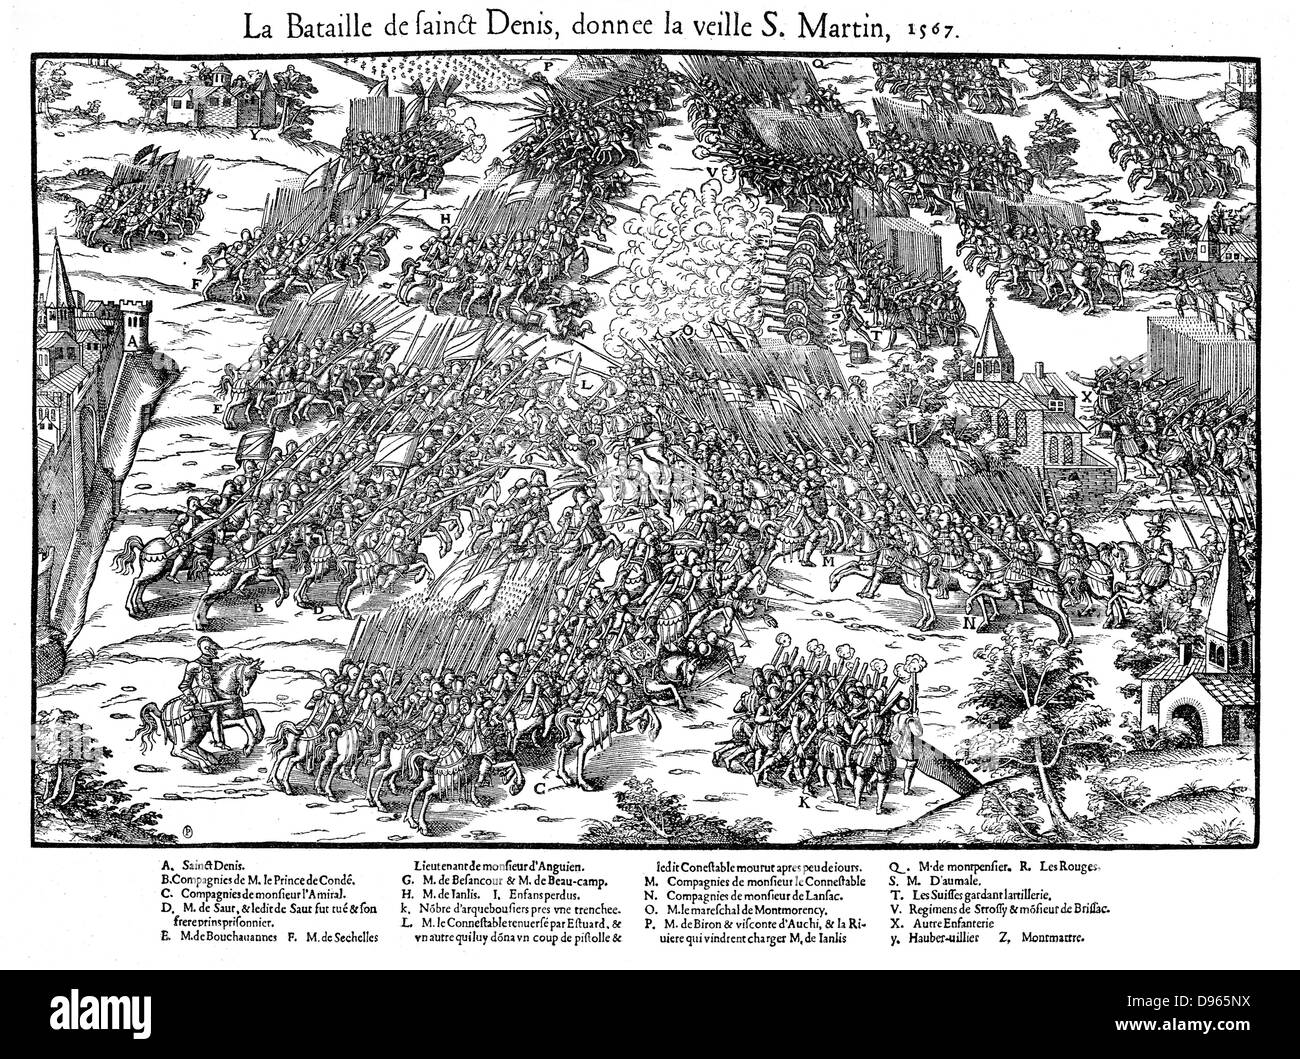 Französische Religionskriege 1562-1598 Schlacht von St Denis, 10. November 1567, zwischen der Hugenotten unter Louis, Prince de Conde (1530-1569) und die königliche Armee unter Anne de Montmorency (1493-1567), der in der Schlacht tödlich verwundet wurde. Hugenotten besiegt. Kupferstich von Jacques Tortorel (fl 1568-1590) und Jean-Jacques Perrissin (c 1536-1617) von ihrer Serie über die Hugenotten Kriege, c1570. Stockfoto